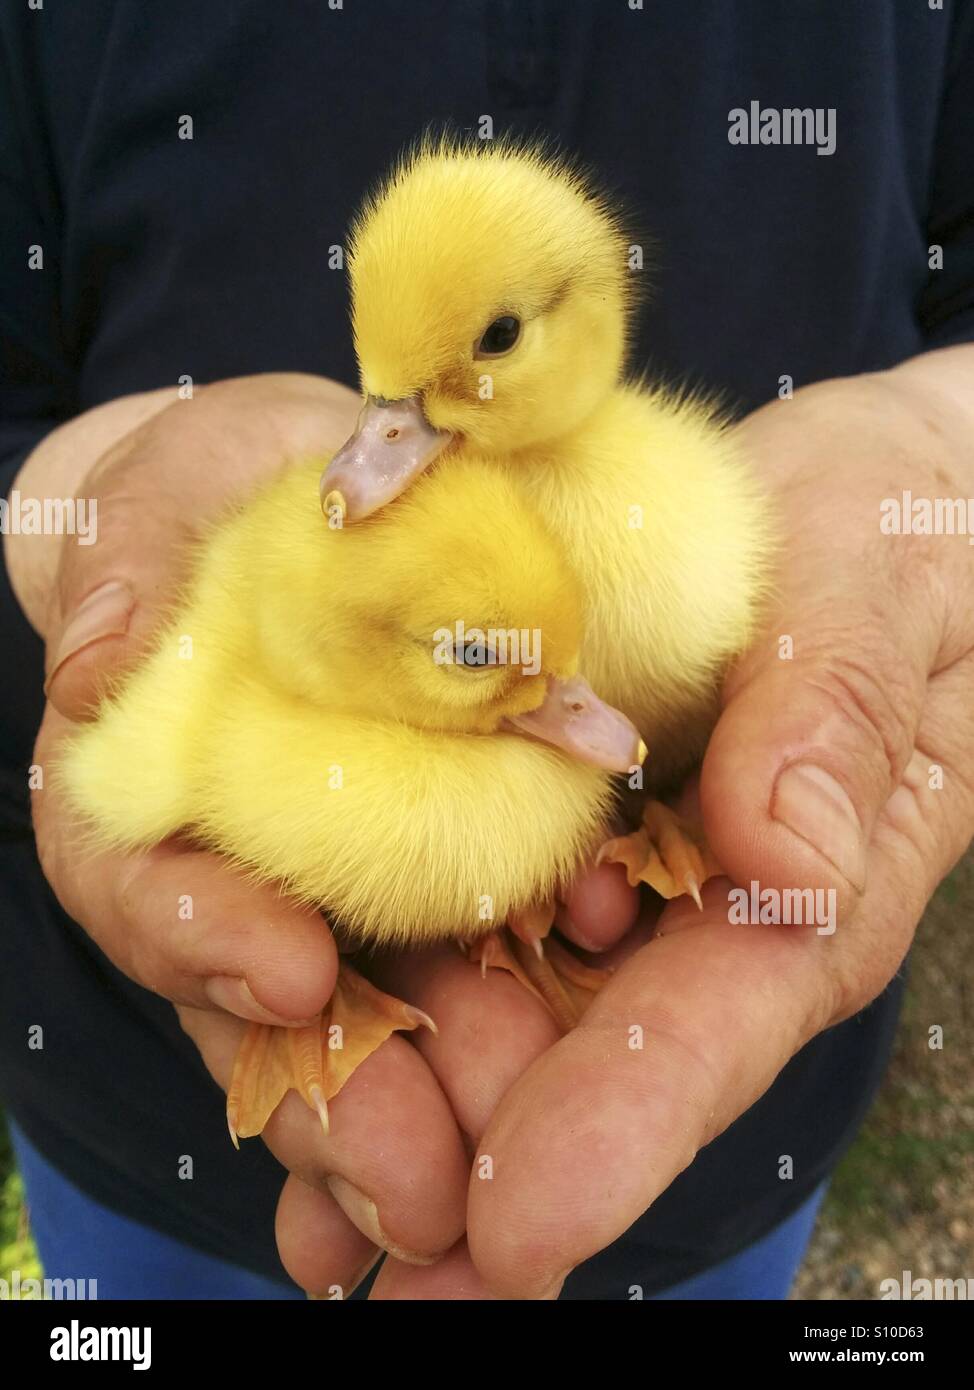 Newborn ducklings. Stock Photo